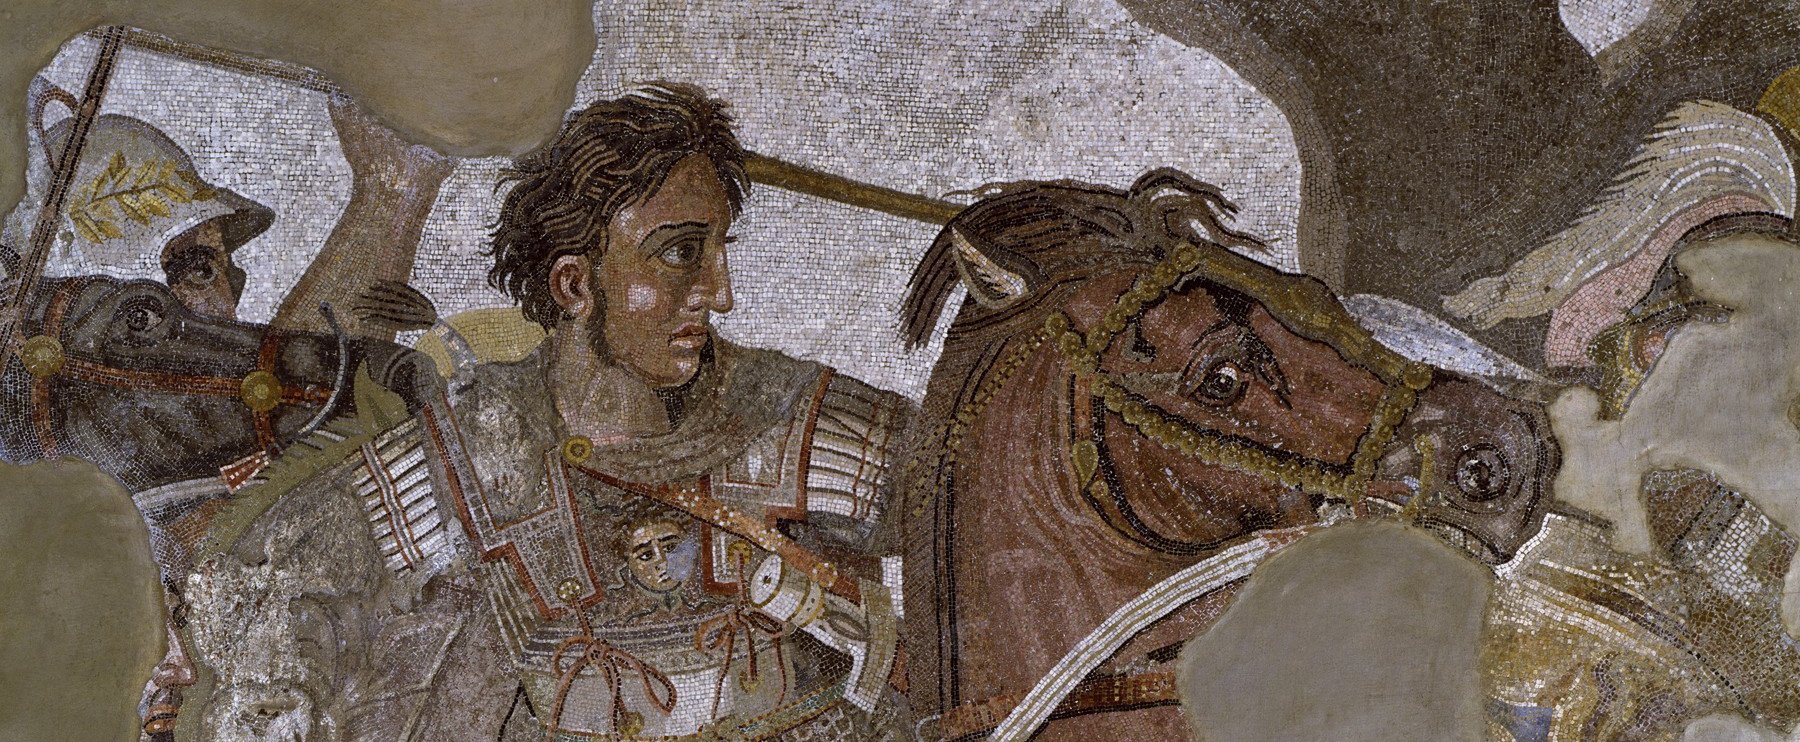 Élve temették el Nagy Sándort? Végre fény derült minden idők leghíresebb hamis haláldiagnózisának rejtélyére